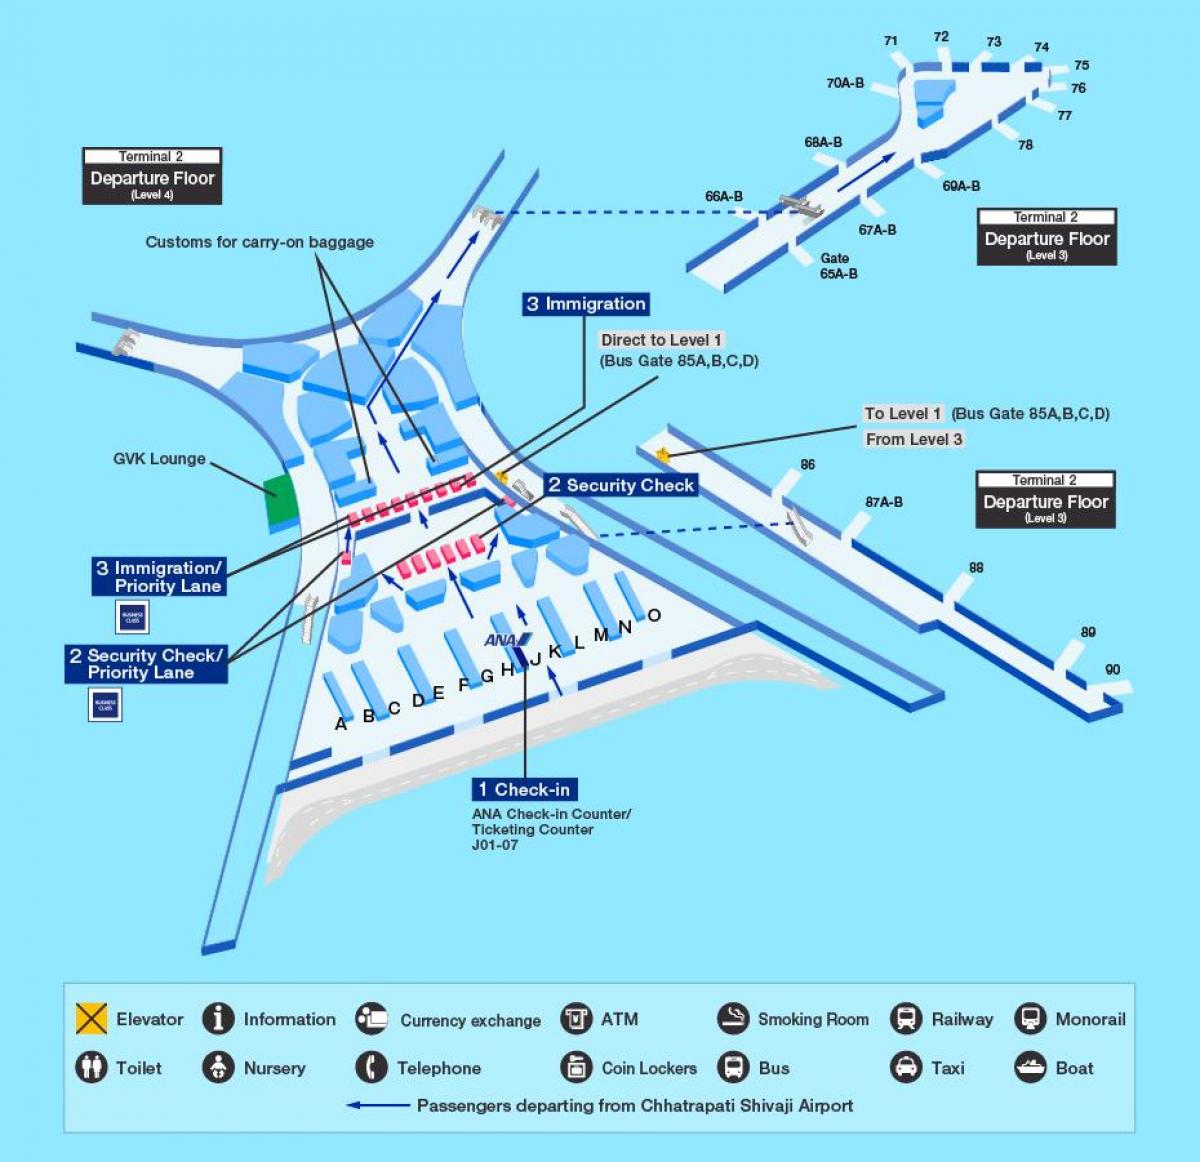 मुंबई अंतरराष्ट्रीय हवाई अड्डे के टर्मिनल 2 के नक्शे